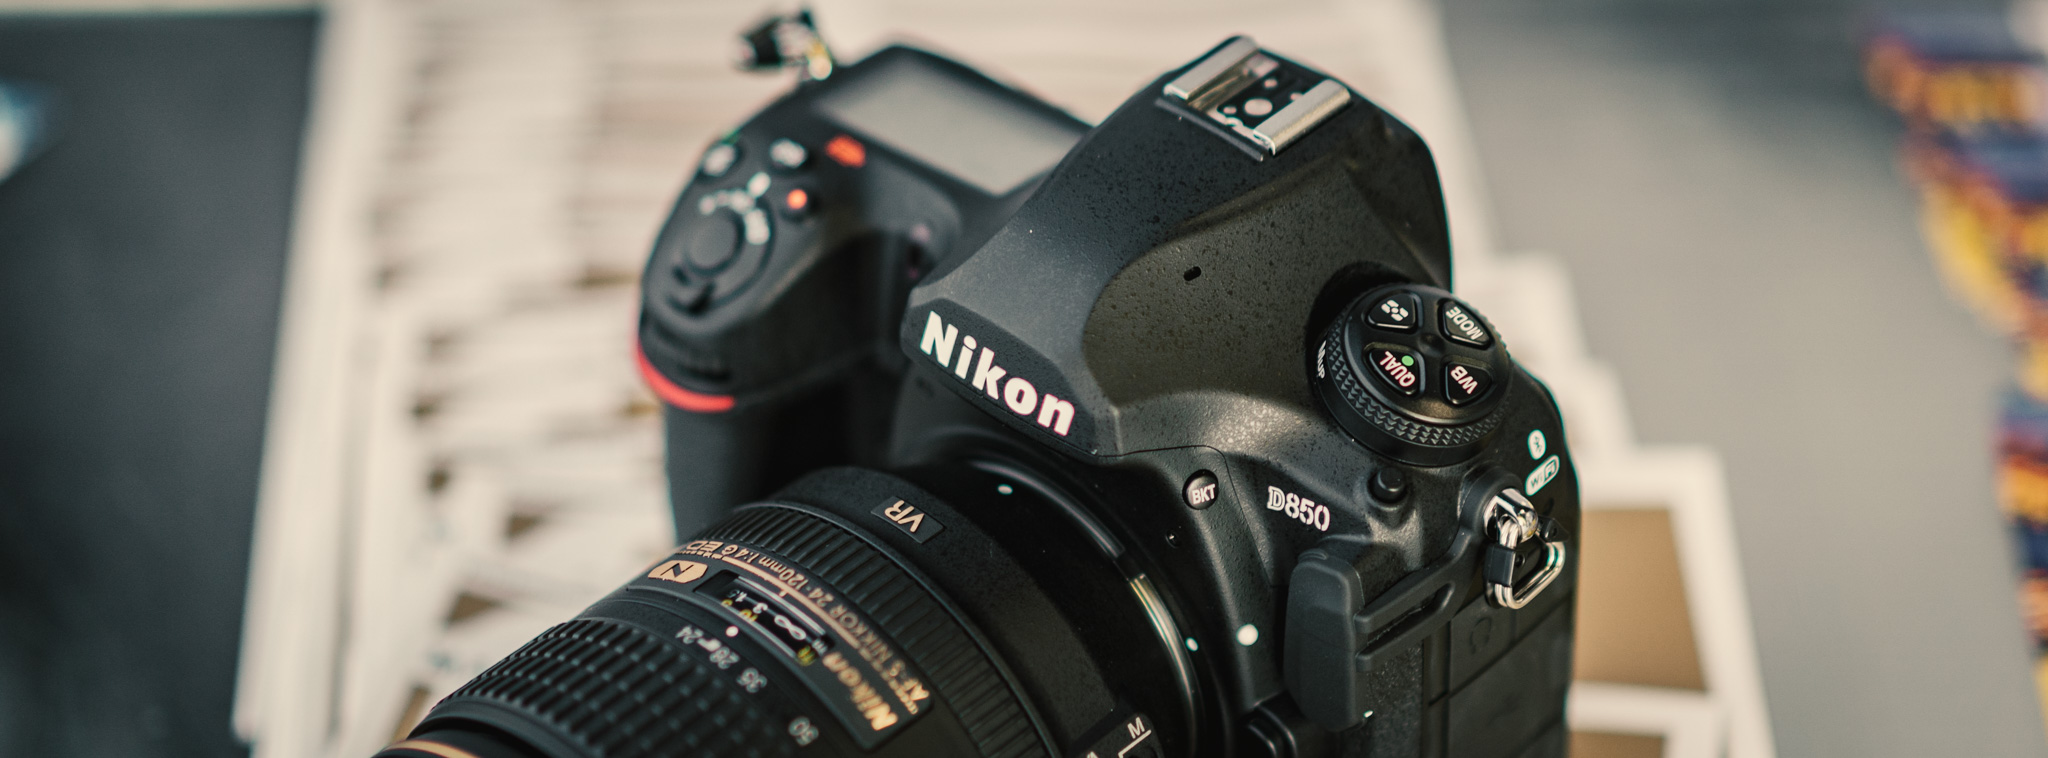 Trên tay Nikon D850: cầm chắc, bỏ đèn cóc, 46Mp, chụp 7fps...